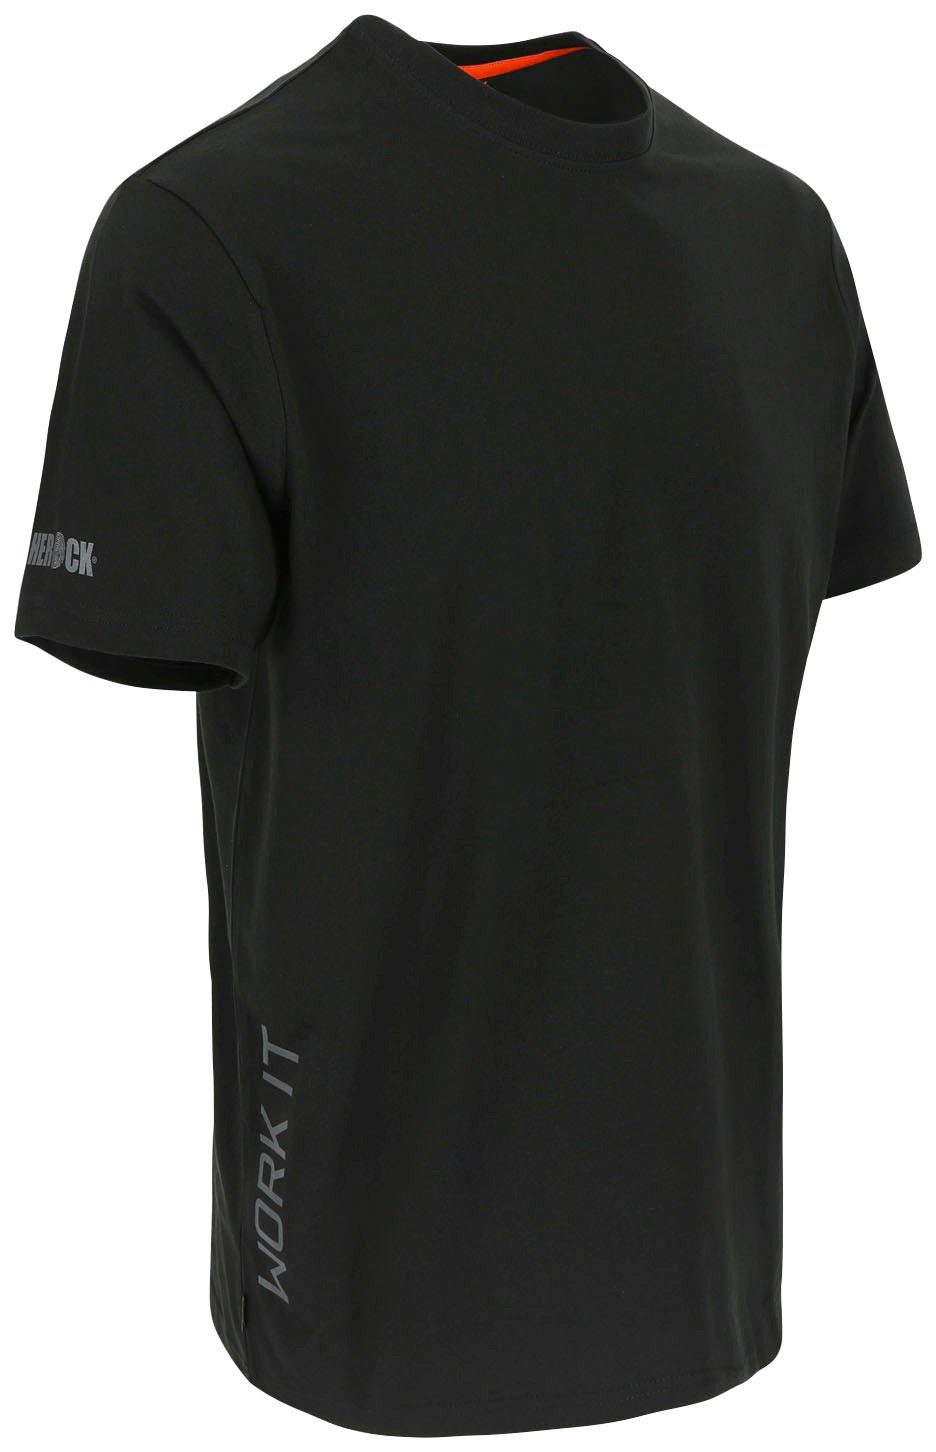 Herock T-Shirt Callius T-Shirt kurze Rippstrickkragen Ärmel, kurze Herock®-Aufdruck, Ärmel Rundhalsausschnitt, schwarz